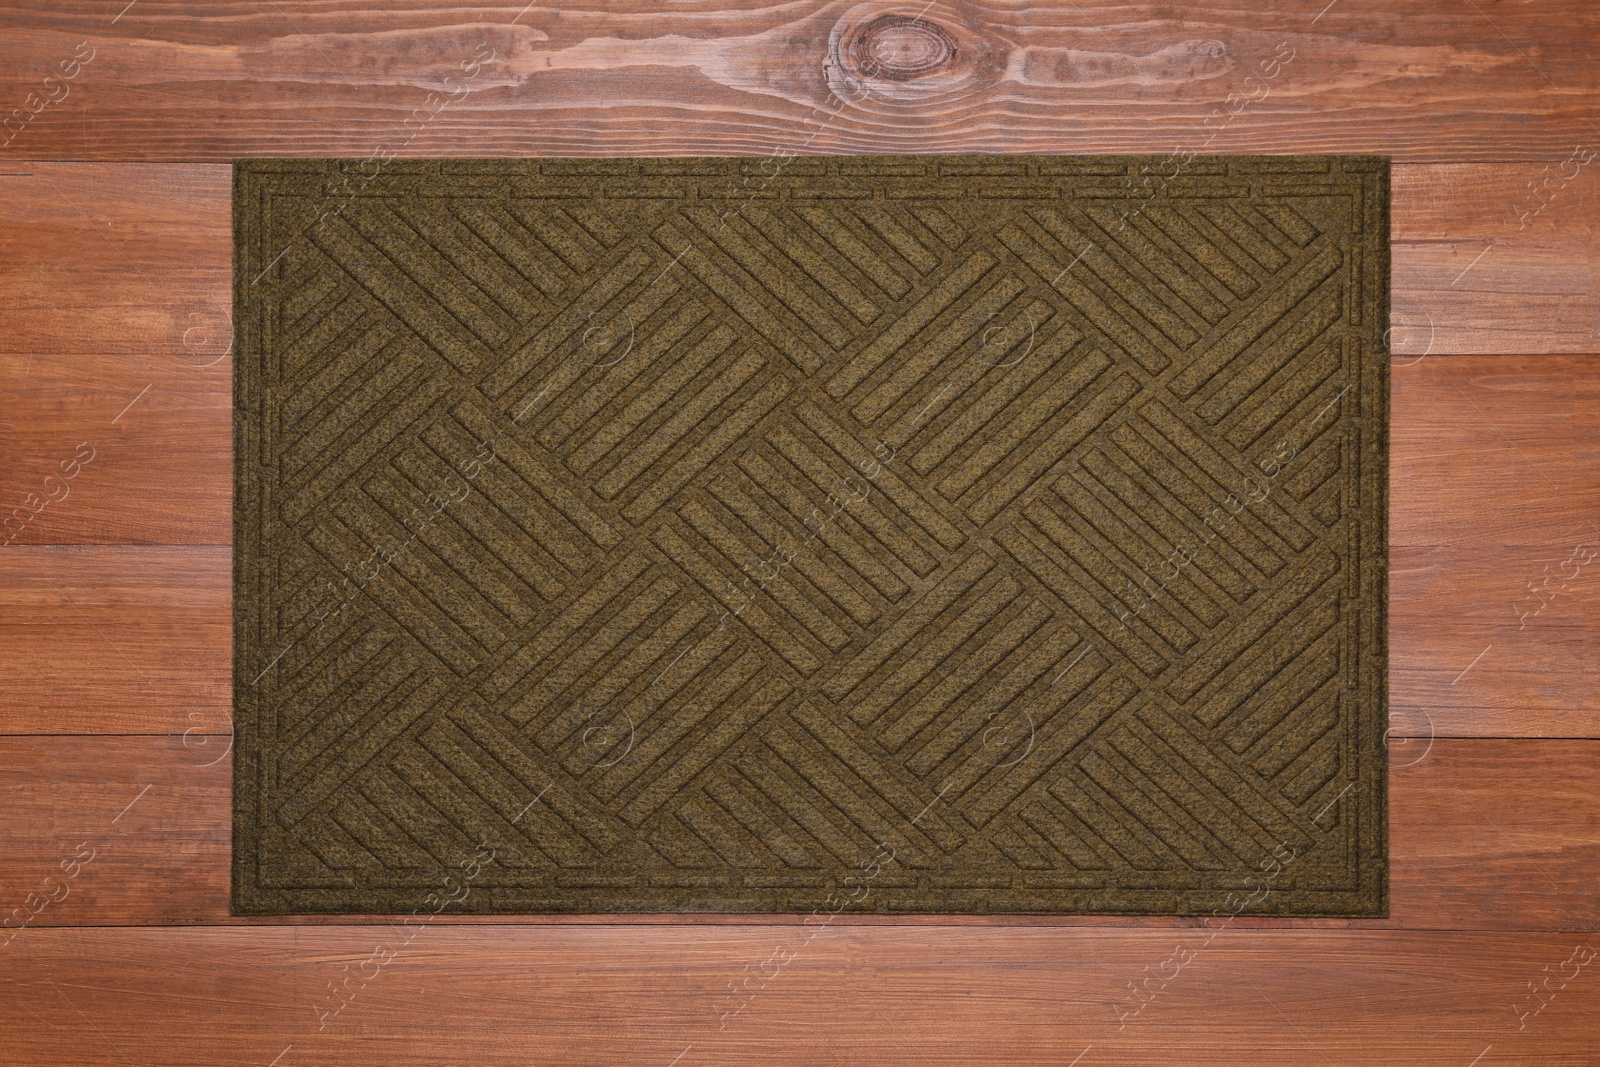 Photo of New clean door mat on wooden floor, top view